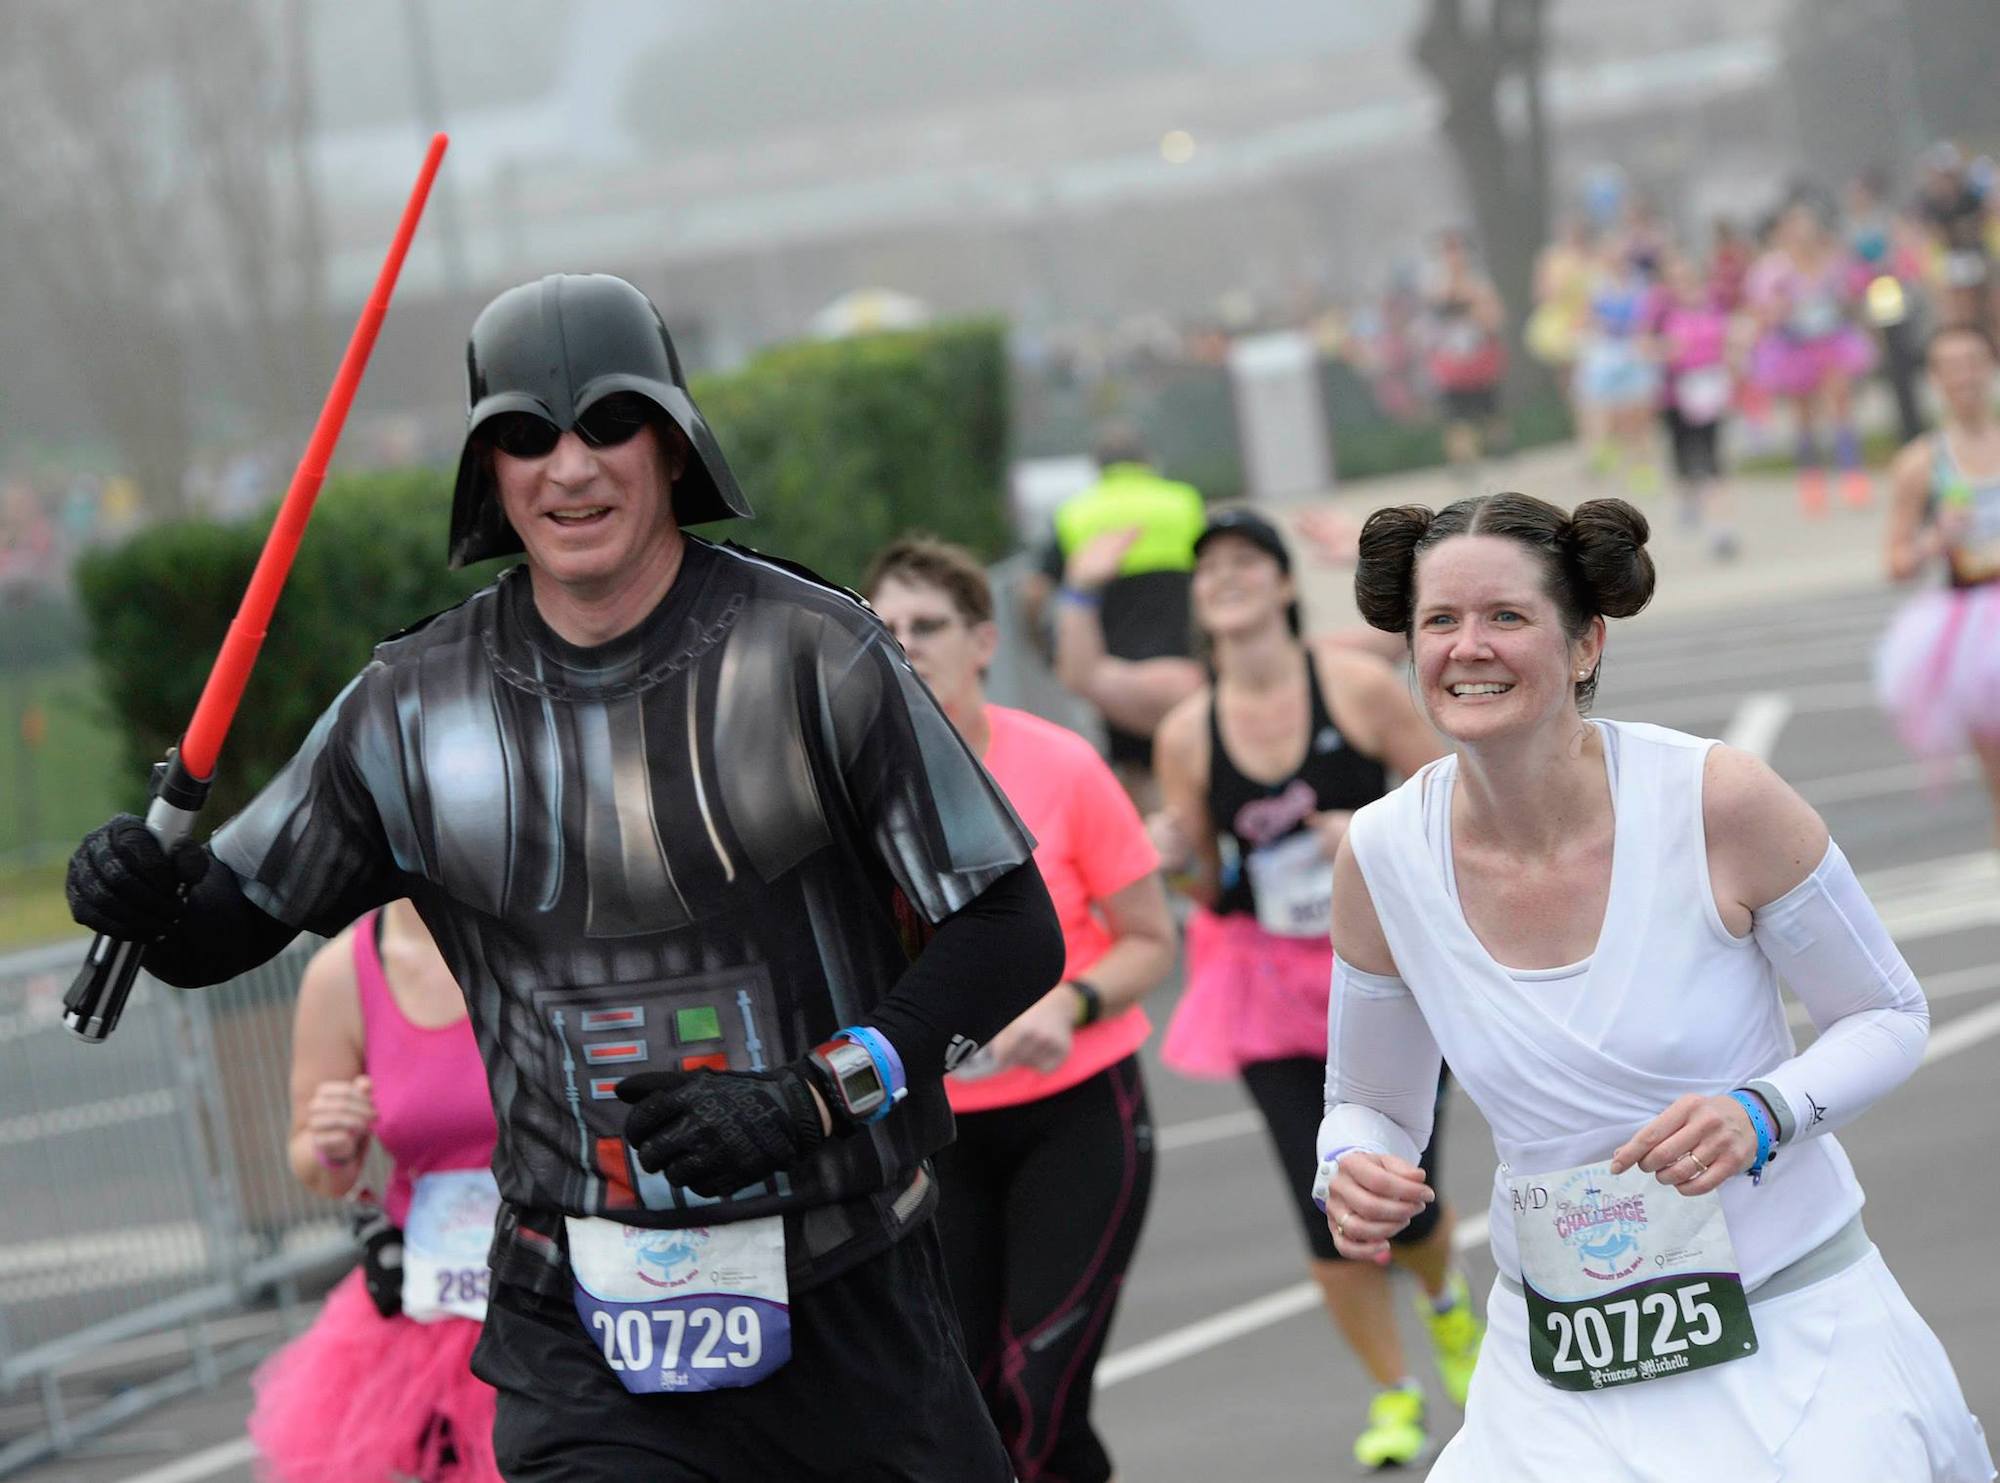 Star Wars Half Marathon Comes to Disneyland